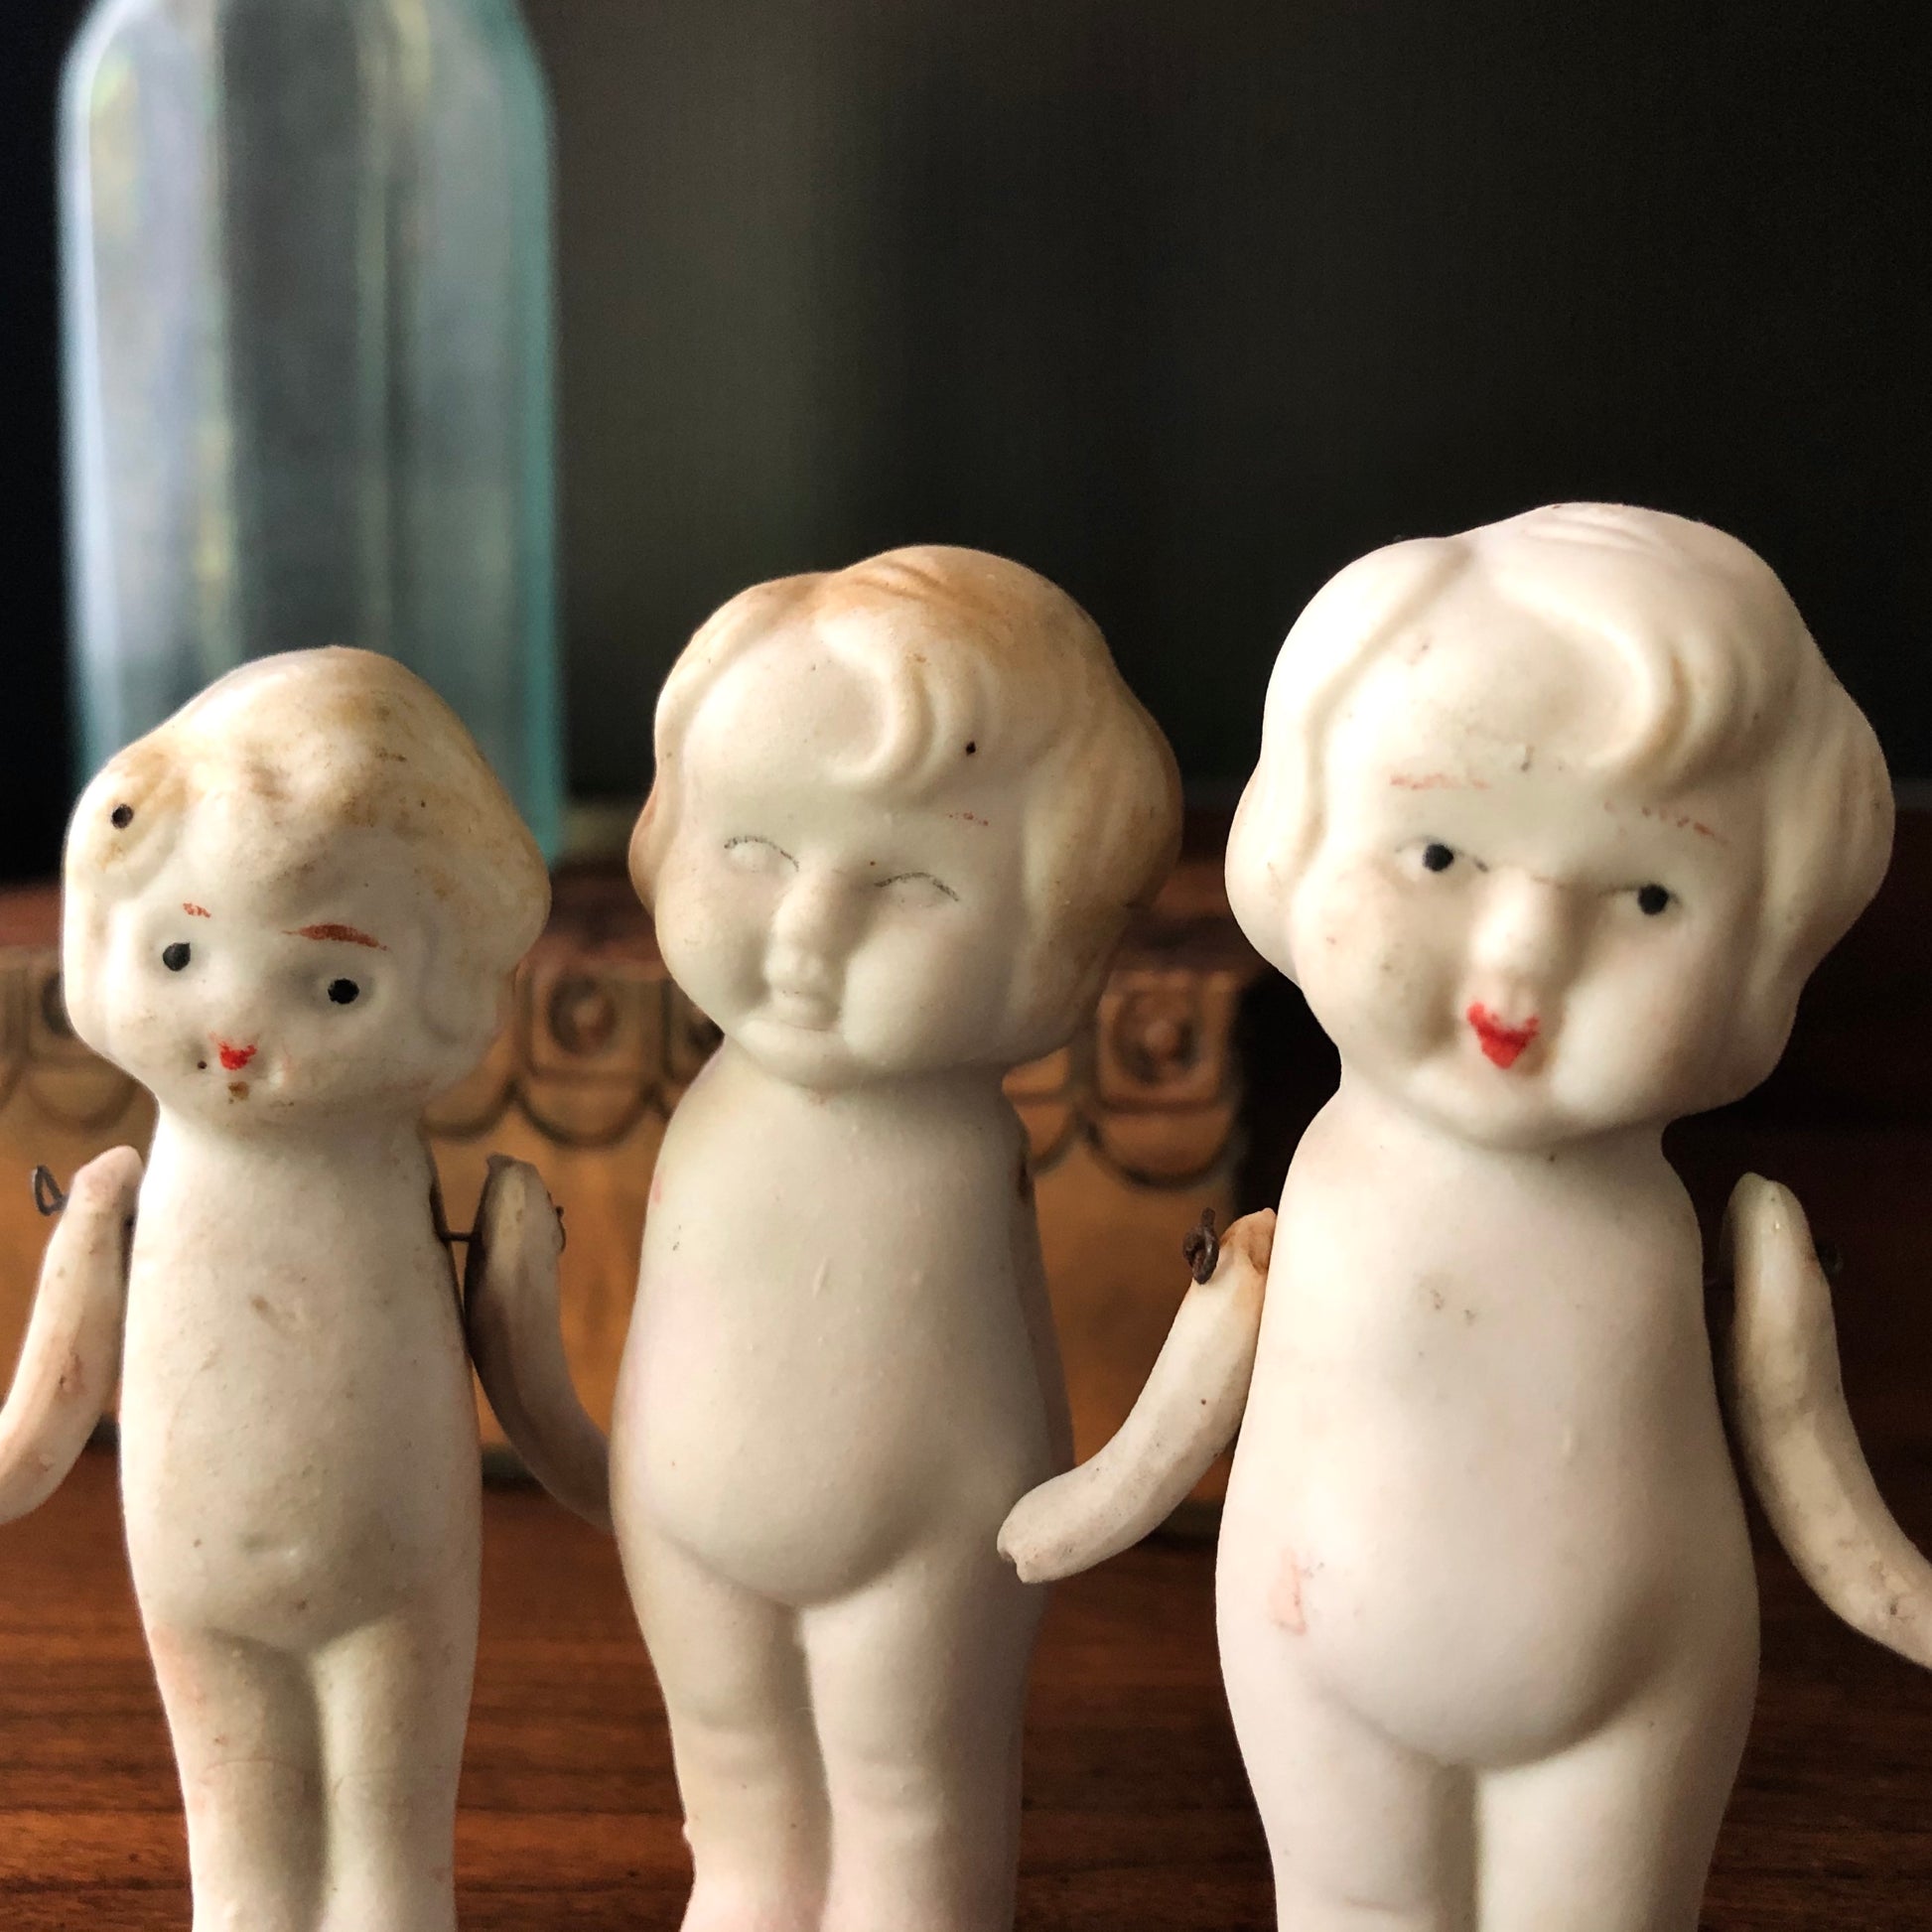 Vintage Japan Bisque Doll Baby Doll Porcelain Doll 